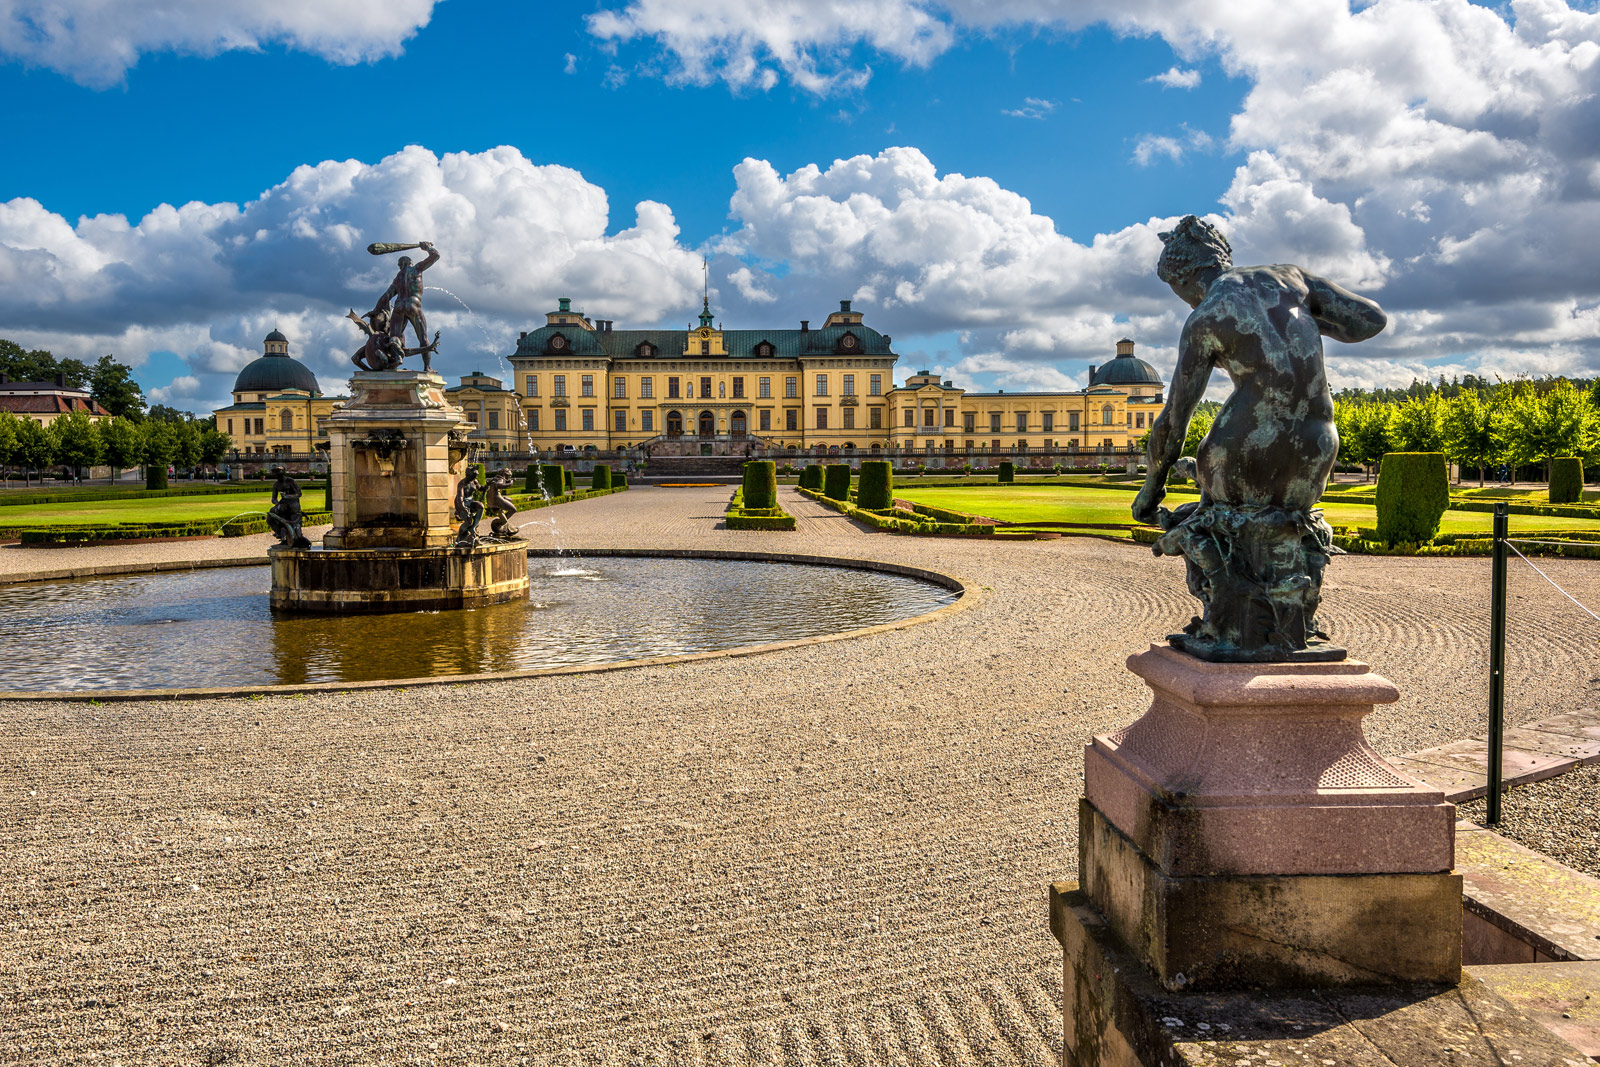 Visiter le Château de Drottningholm